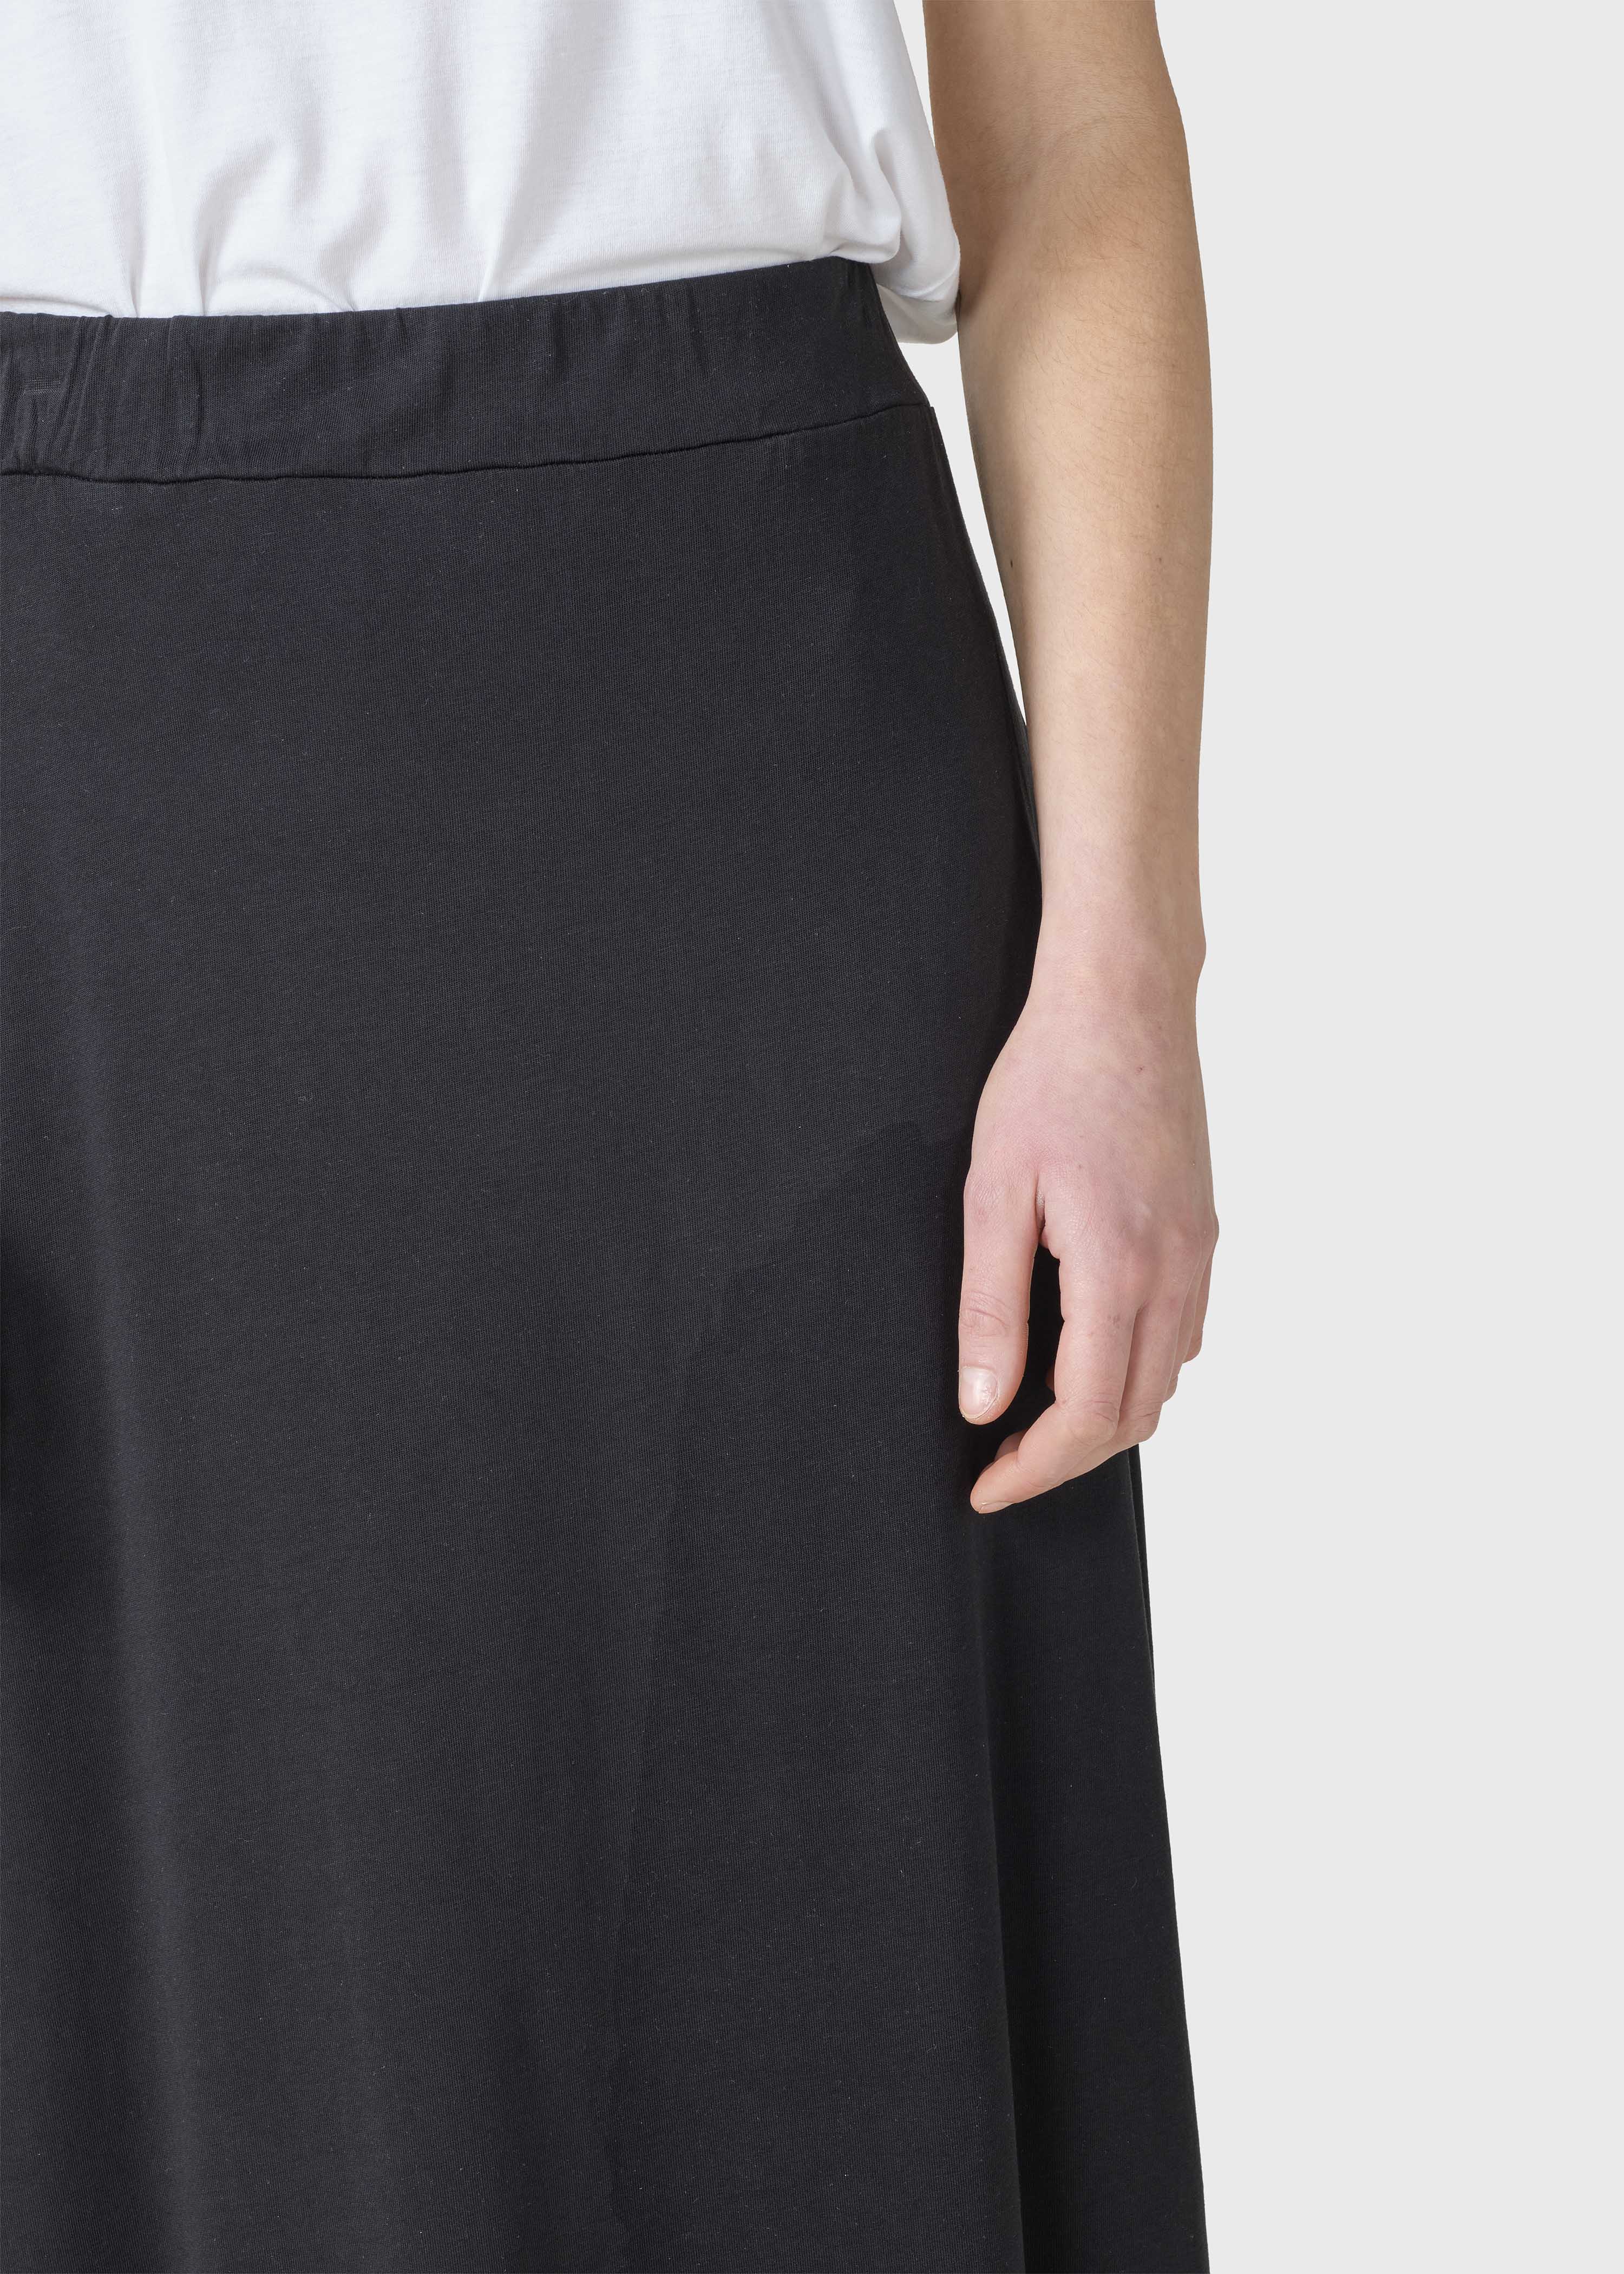 Long black skirt Nora